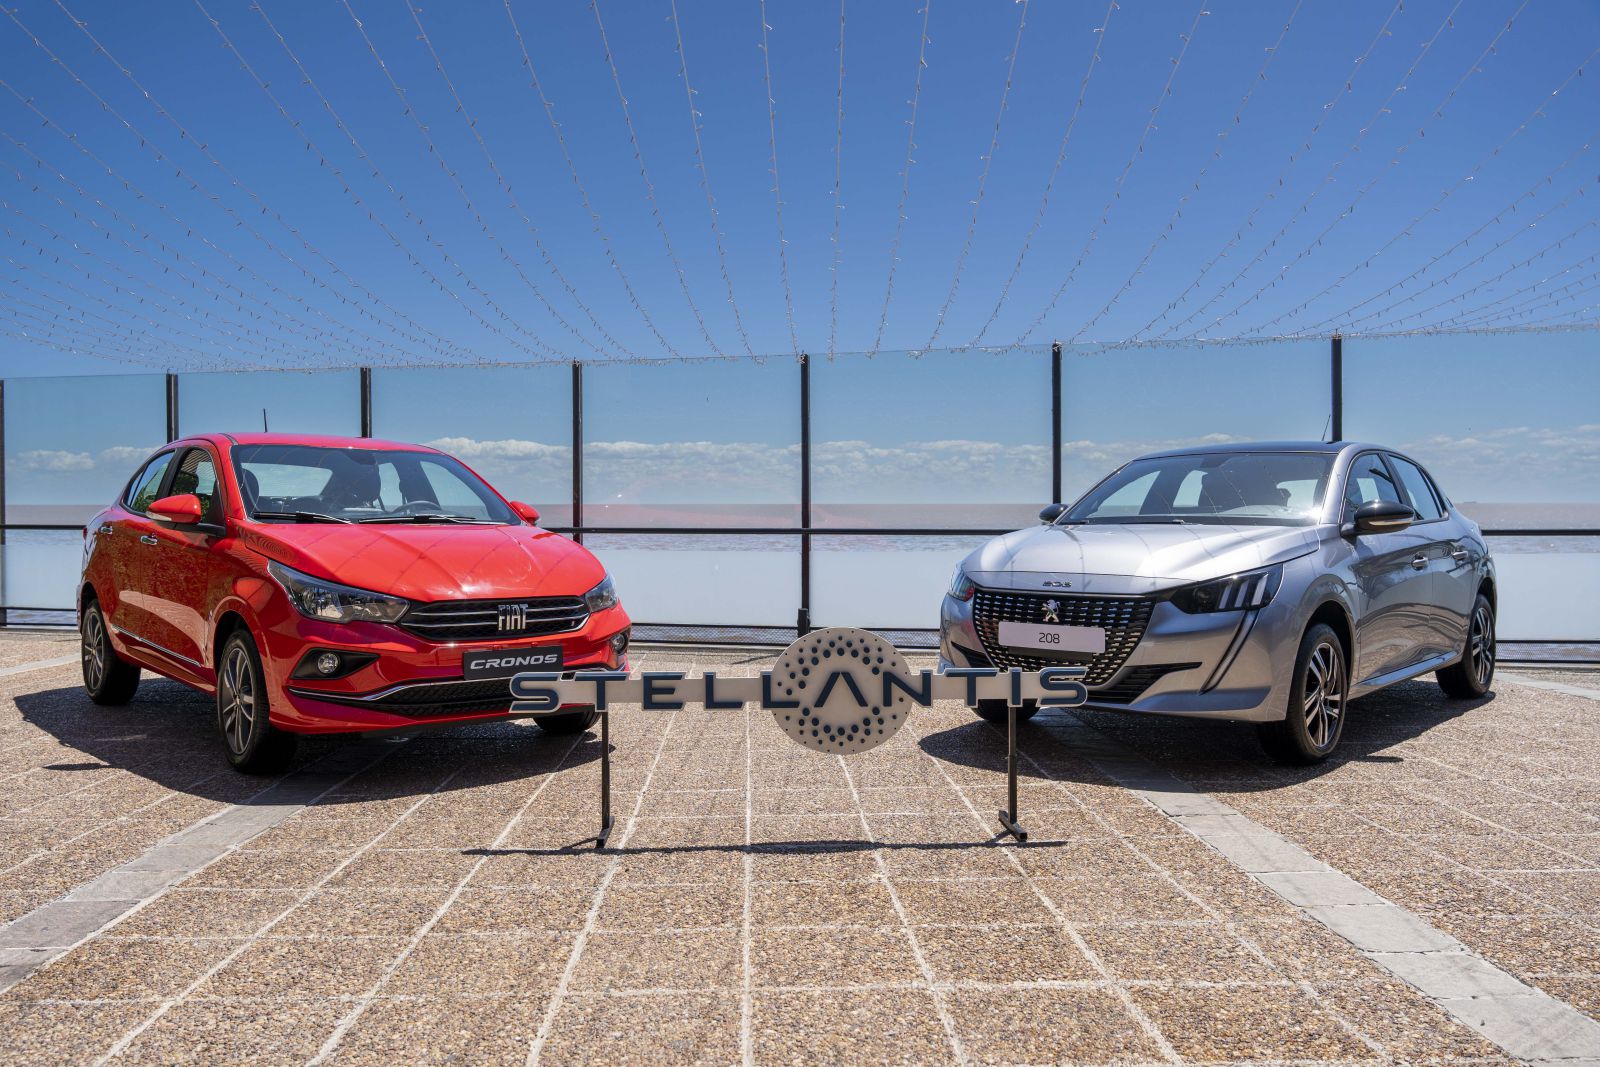 El éxito del Peugeot 208 y Fiat Cronos afianza a Stellantis como líder de producción y ventas en Argentina